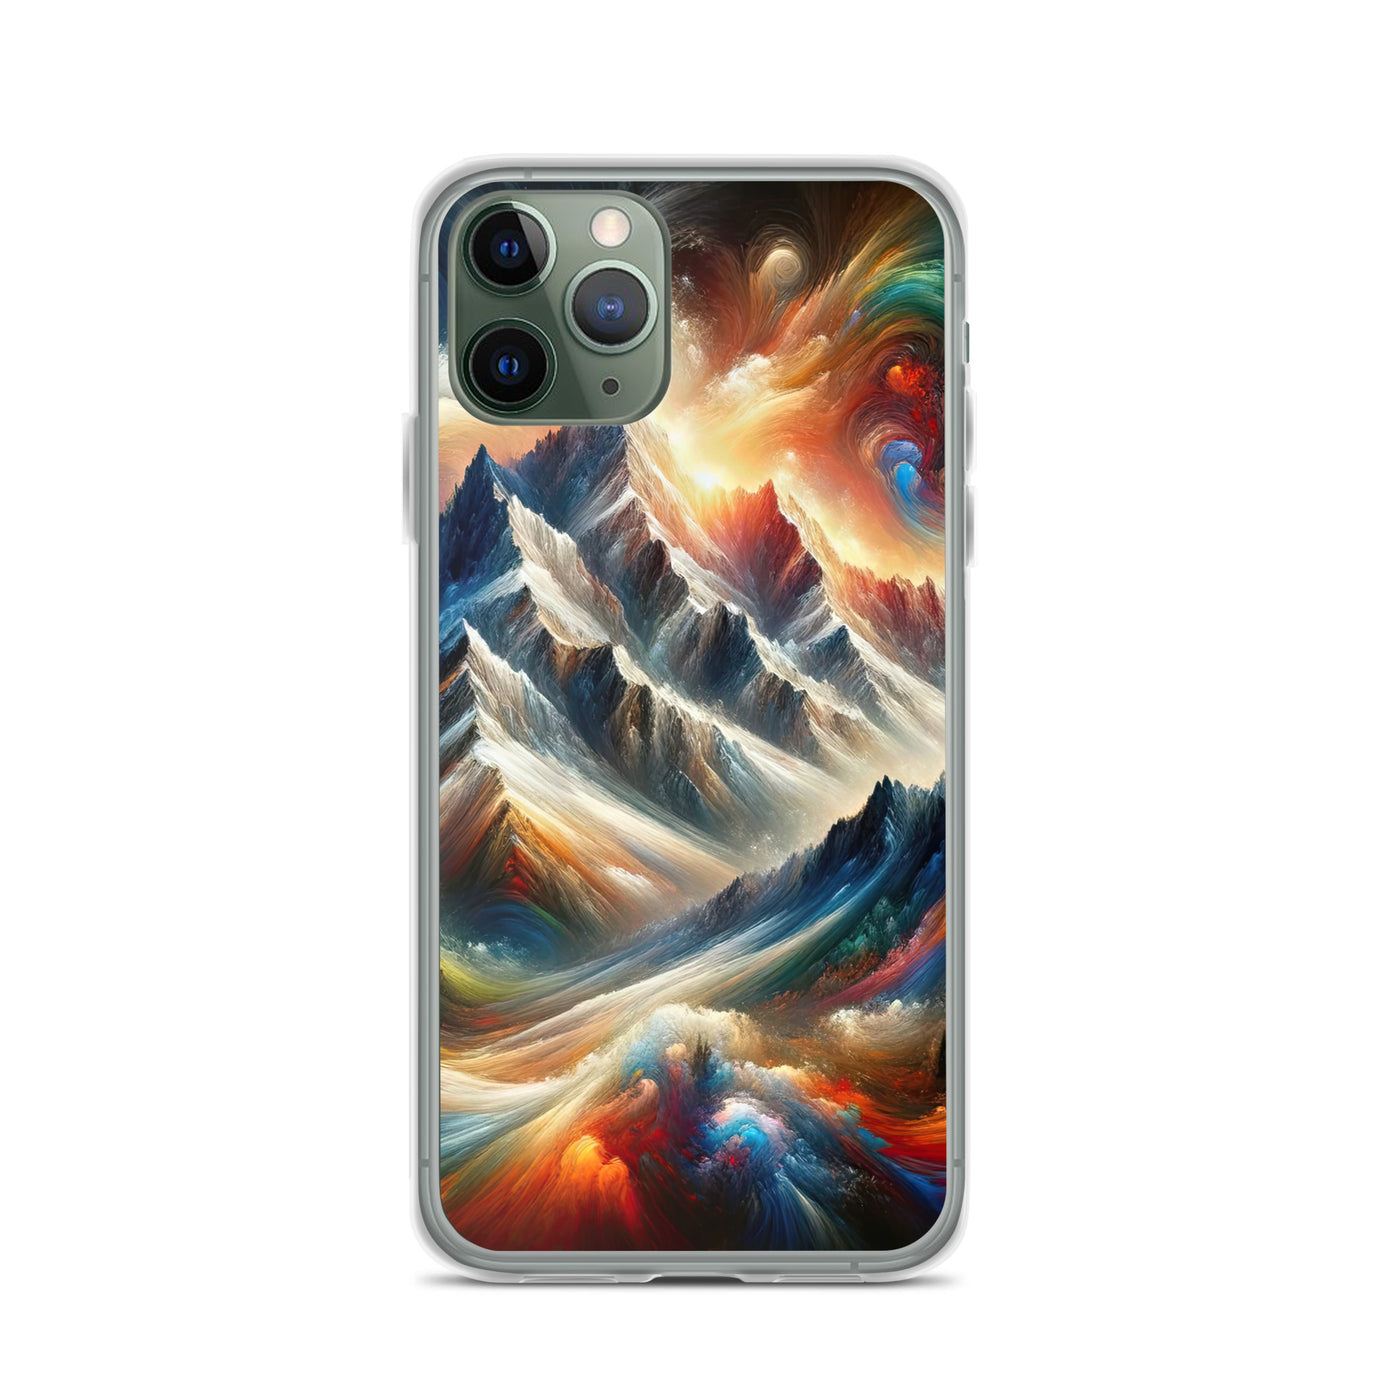 Expressionistische Alpen, Berge: Gemälde mit Farbexplosion - iPhone Schutzhülle (durchsichtig) berge xxx yyy zzz iPhone 11 Pro